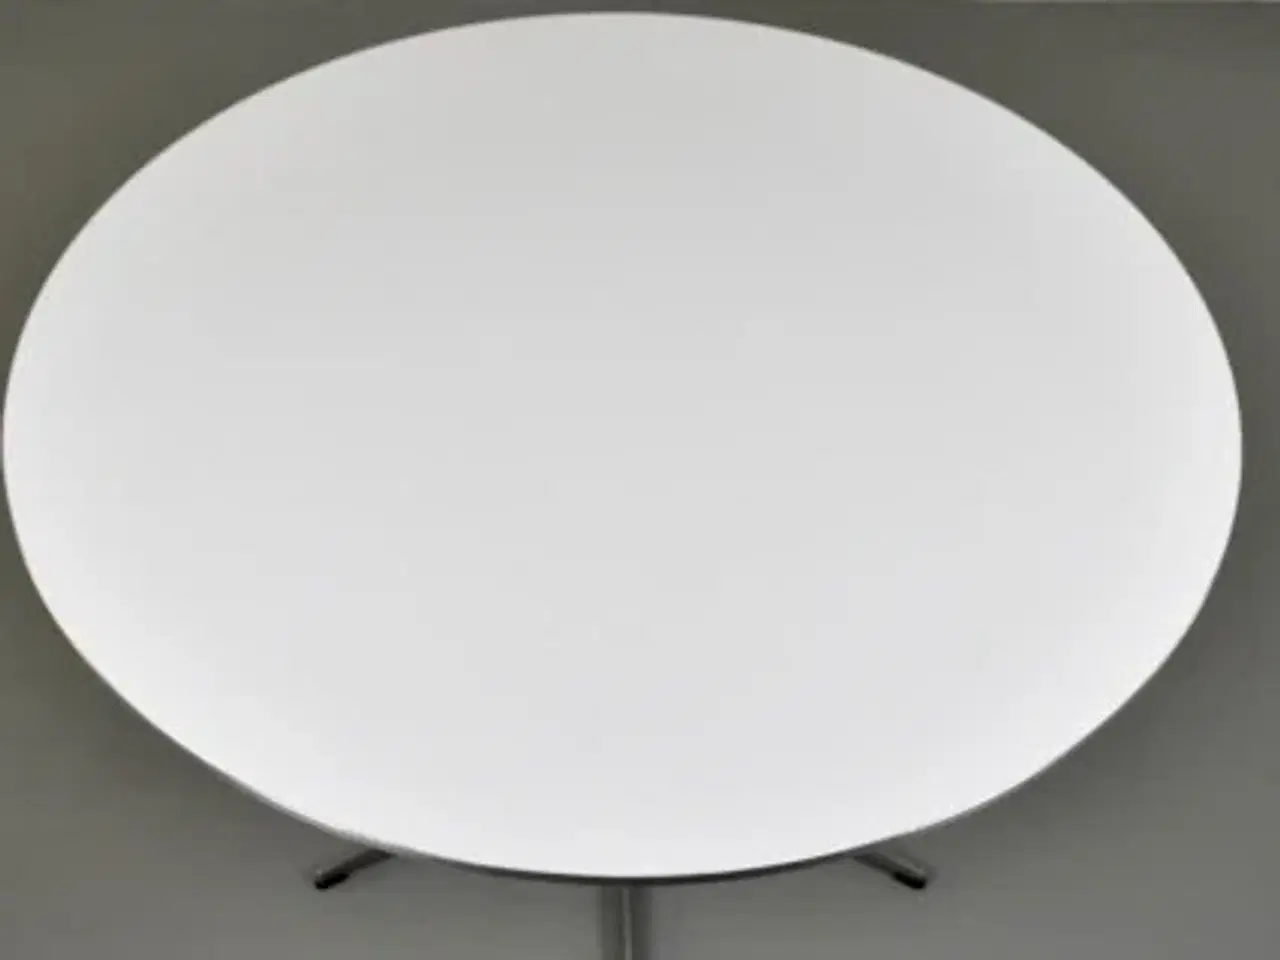 Billede 2 - Fritz hansen cafebord i hvid med metal kant. ø120 cm.